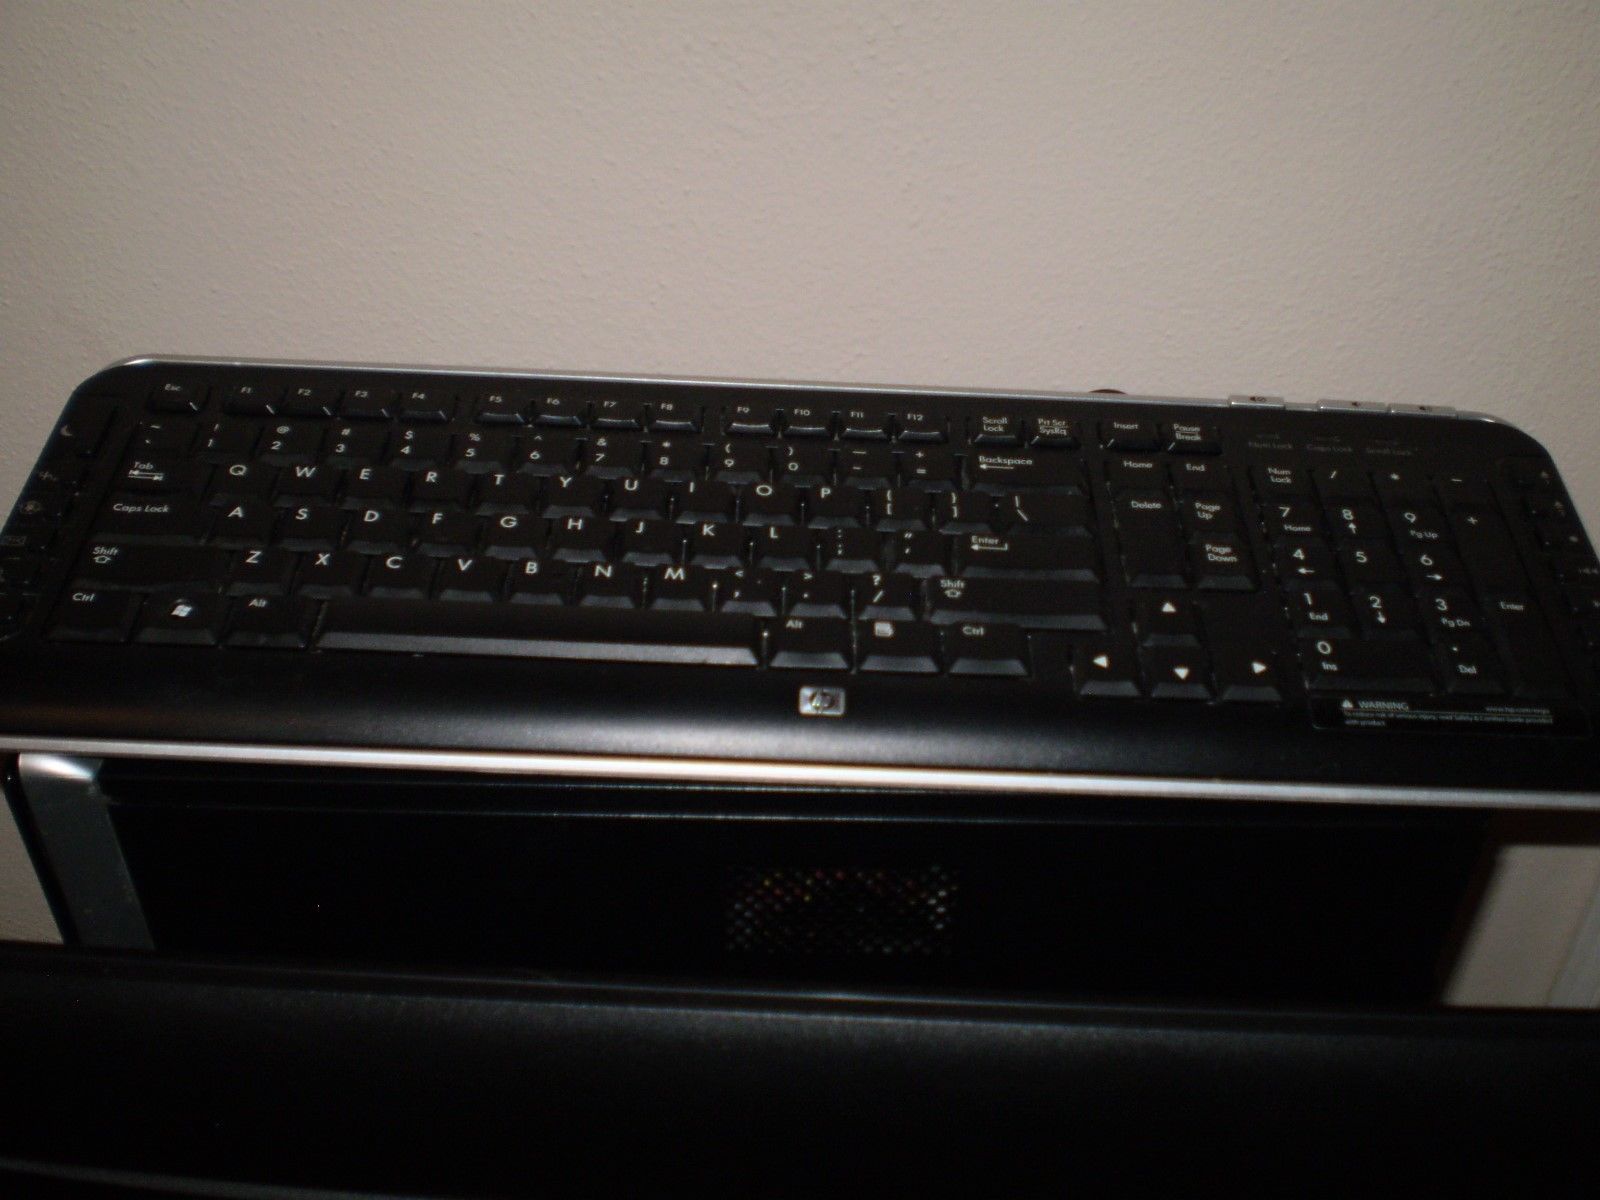 Hewlett-Packard Model 5189 Wired Keyboard - $19.80